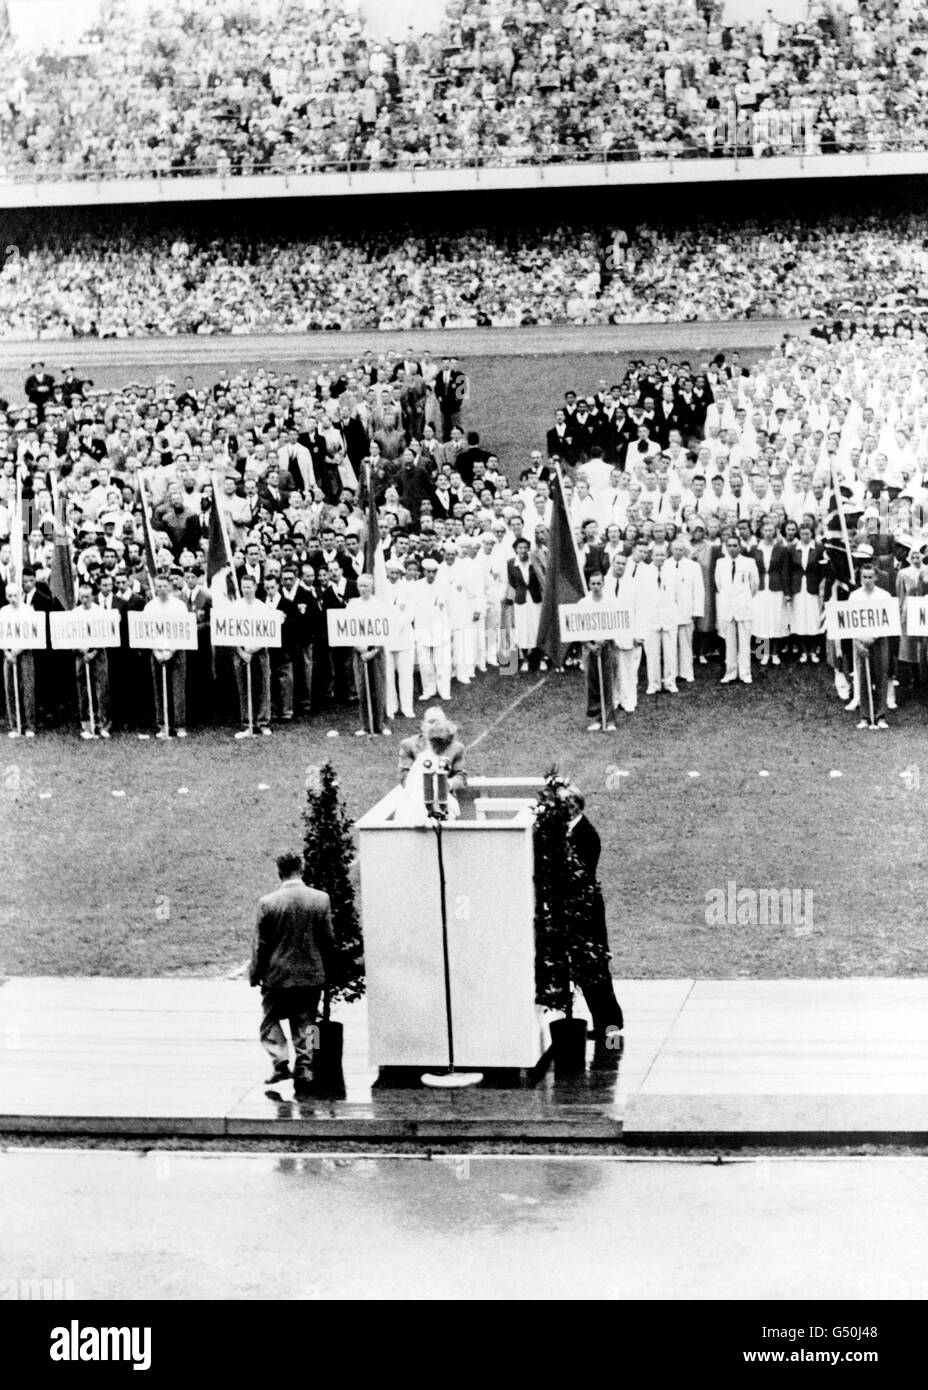 Olympische Spiele 1952 In Helsinki - Eröffnungszeremonie. Die Eröffnungszeremonie der Olympischen Spiele 1952 in Helsinki. Stockfoto